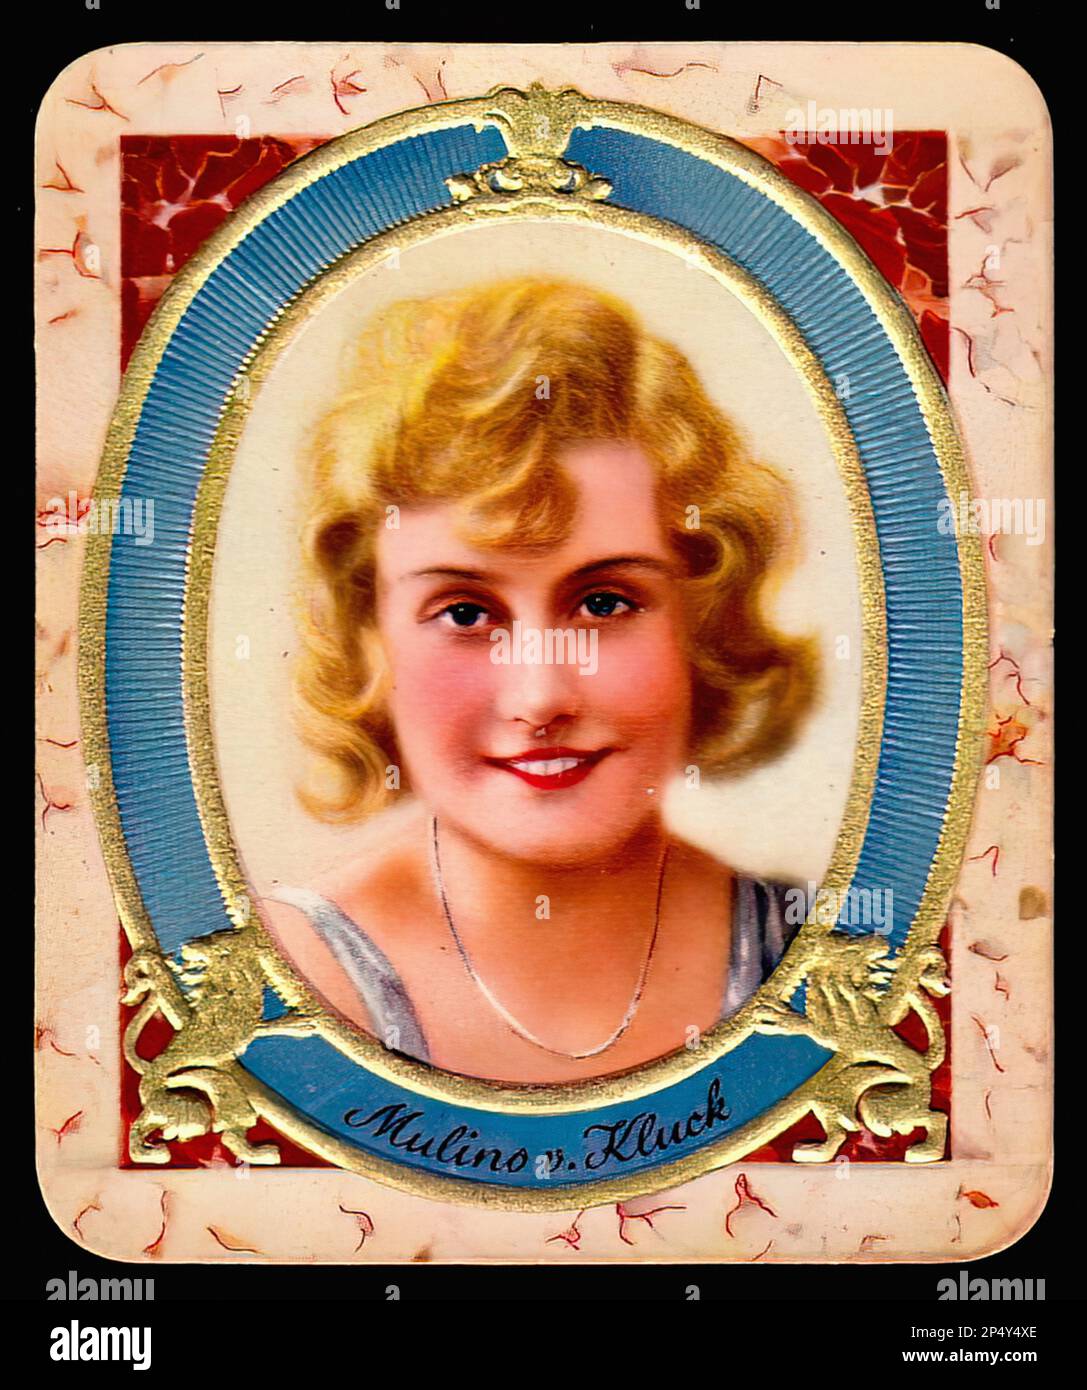 Portrait of Mulino von Kluck - Vintage German Cigarette Card Stock Photo